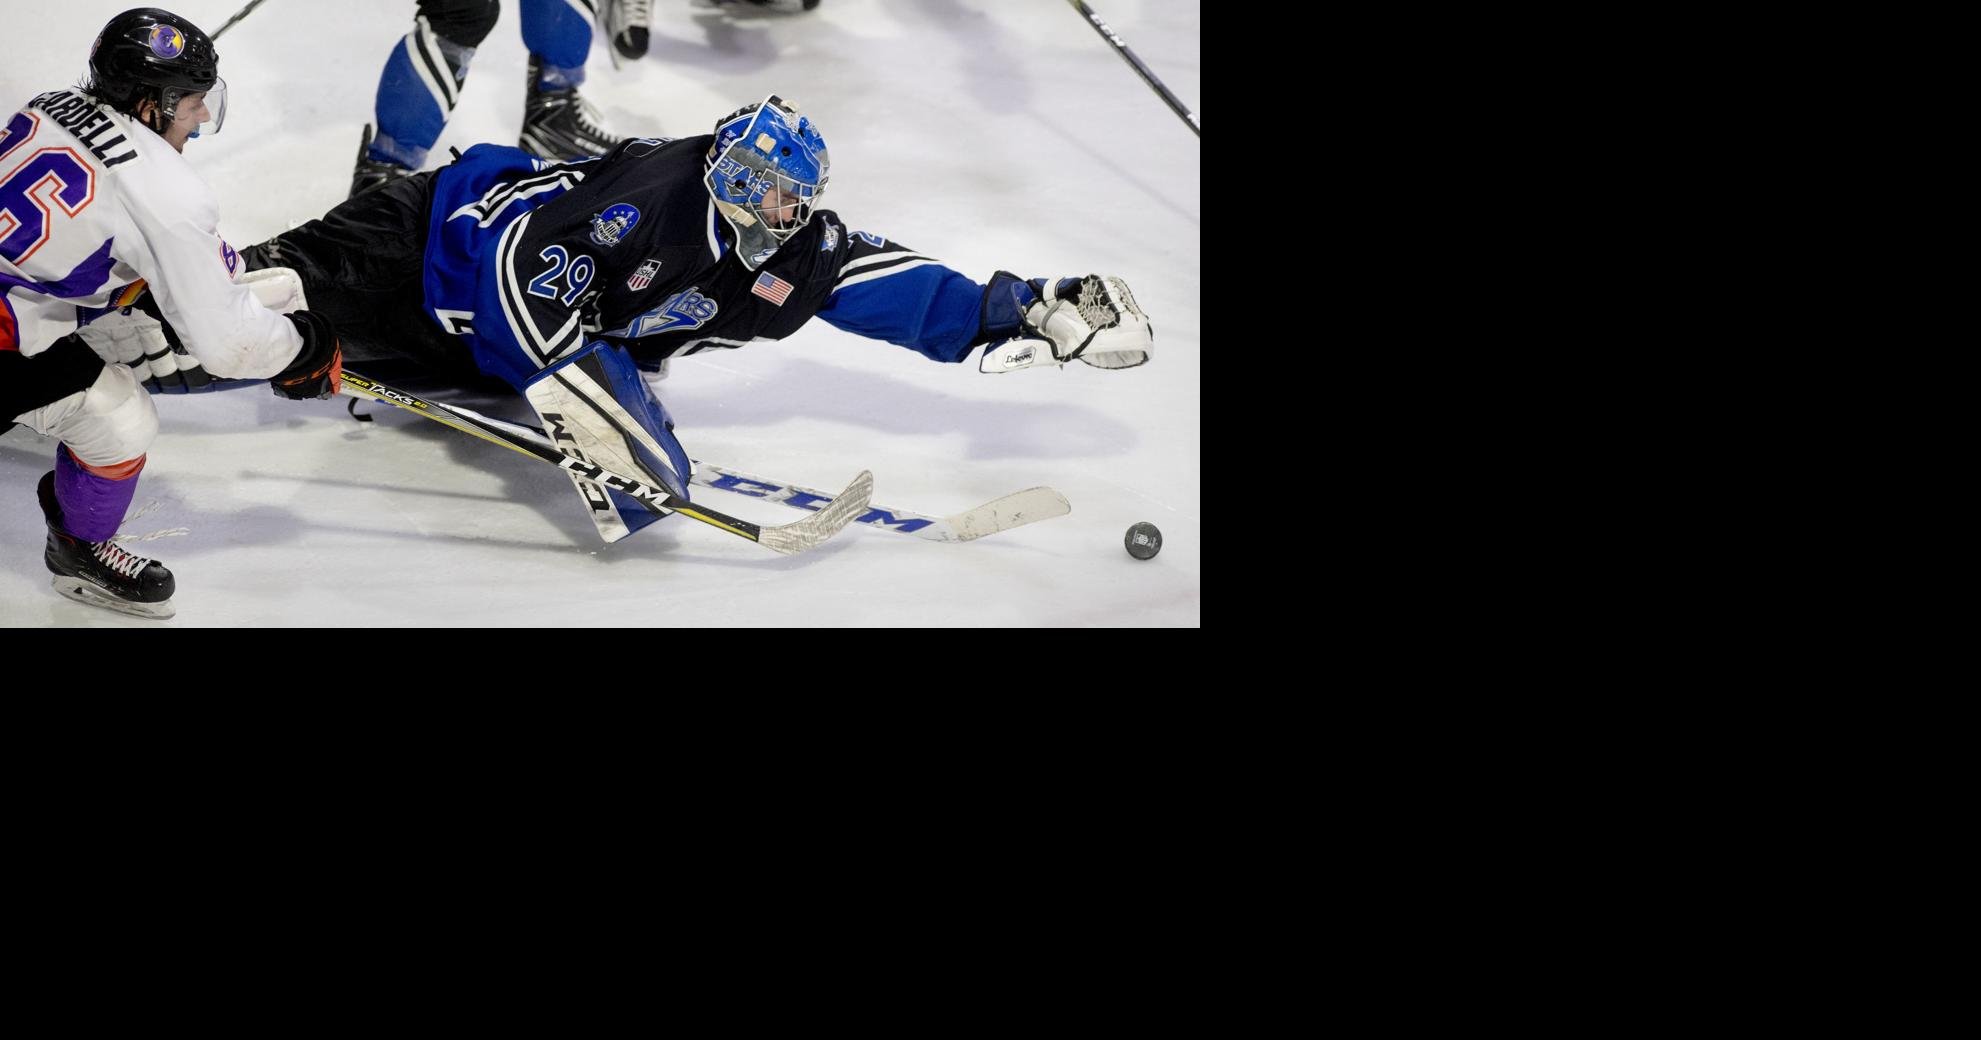 USHL Hockey: Late goal halts Waterloo